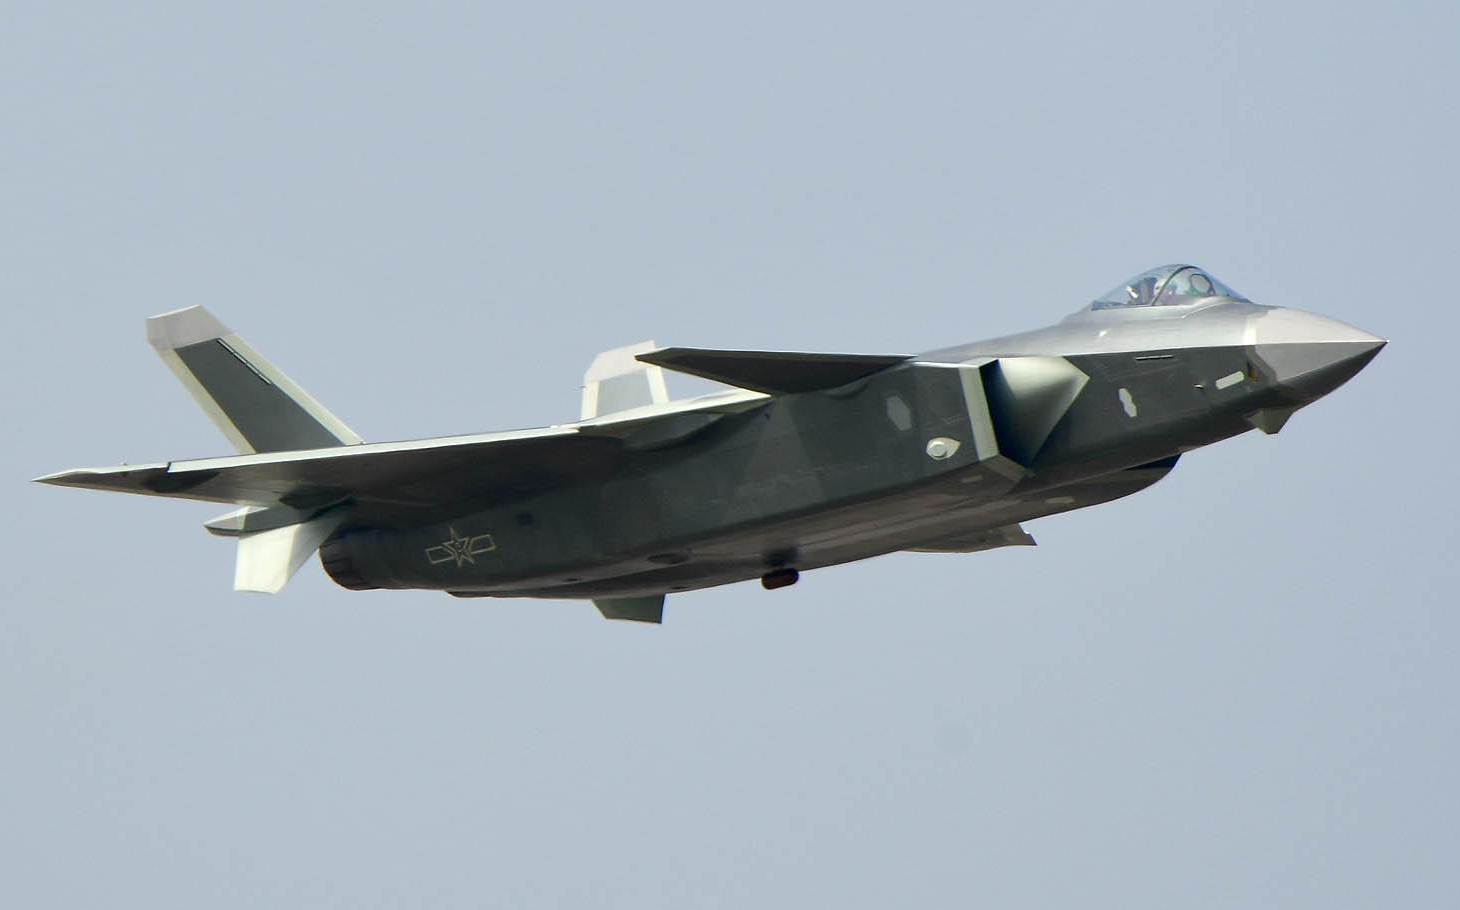 疑似中国第六代战斗机早已展出,与歼20相比,它可能有哪些不同?